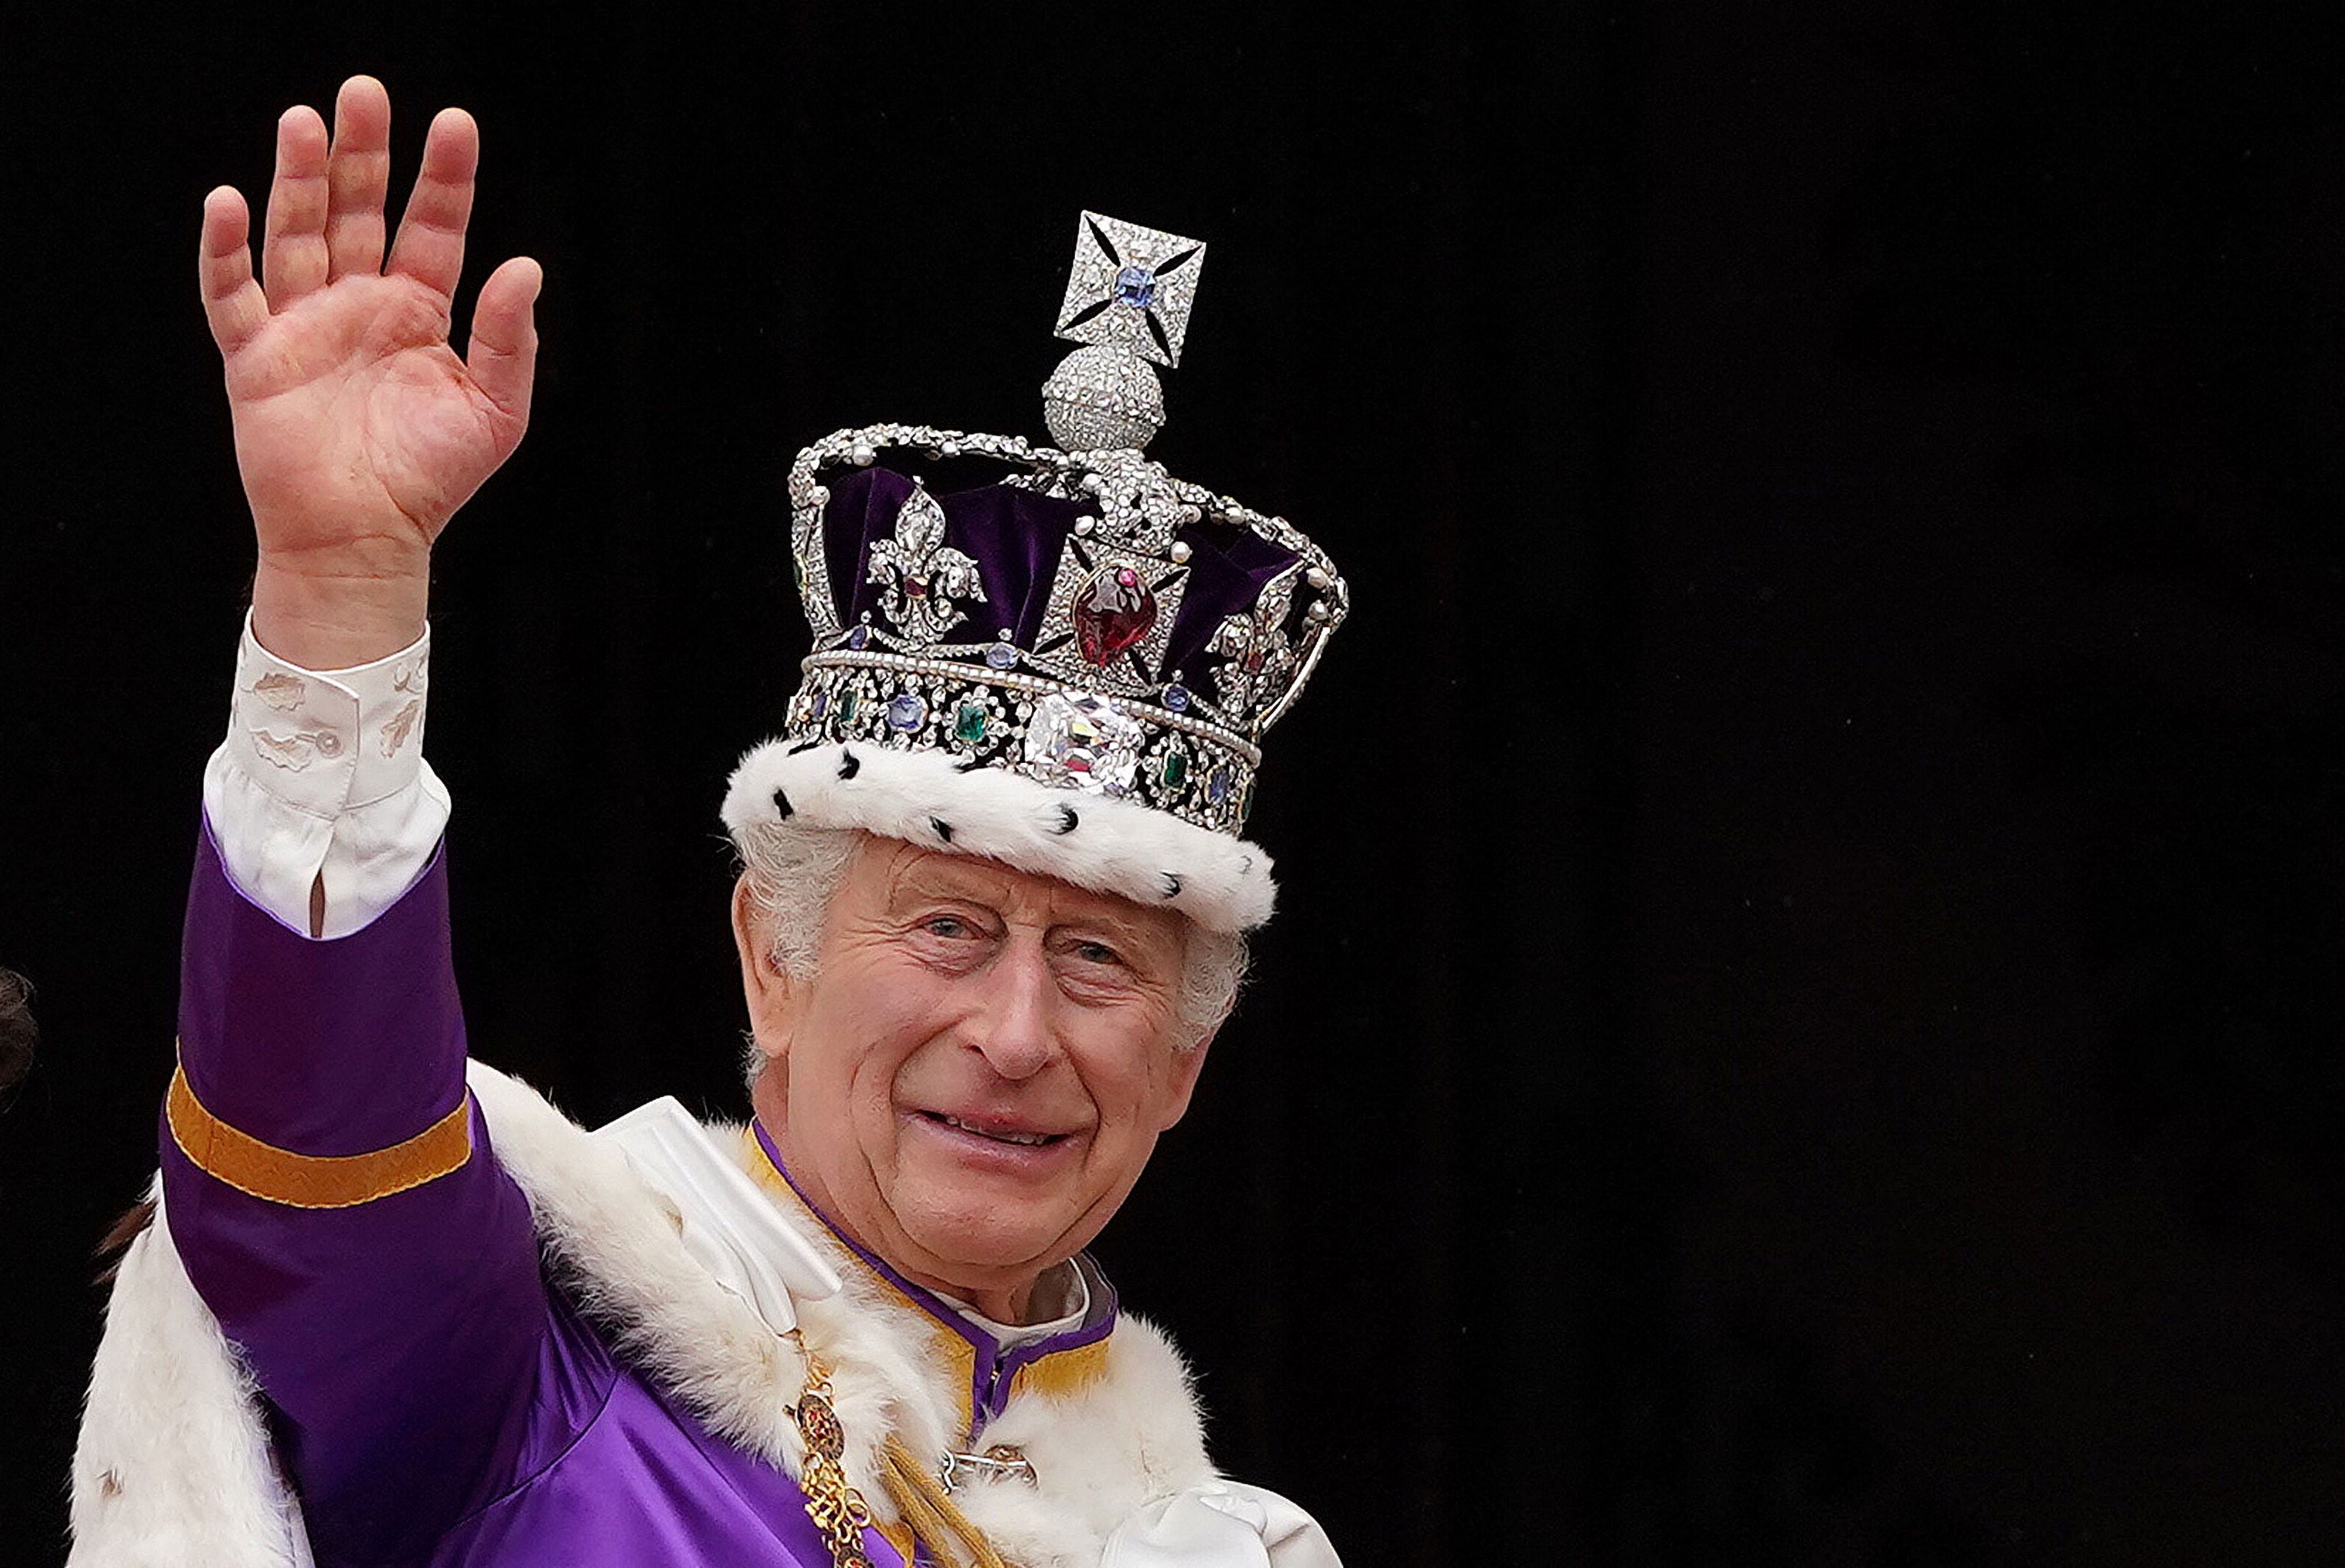 Großbritanniens König Charles III. trägt am 6. Mai 2023 im Zentrum Londons die kaiserliche Staatskrone | Quelle: Getty Images